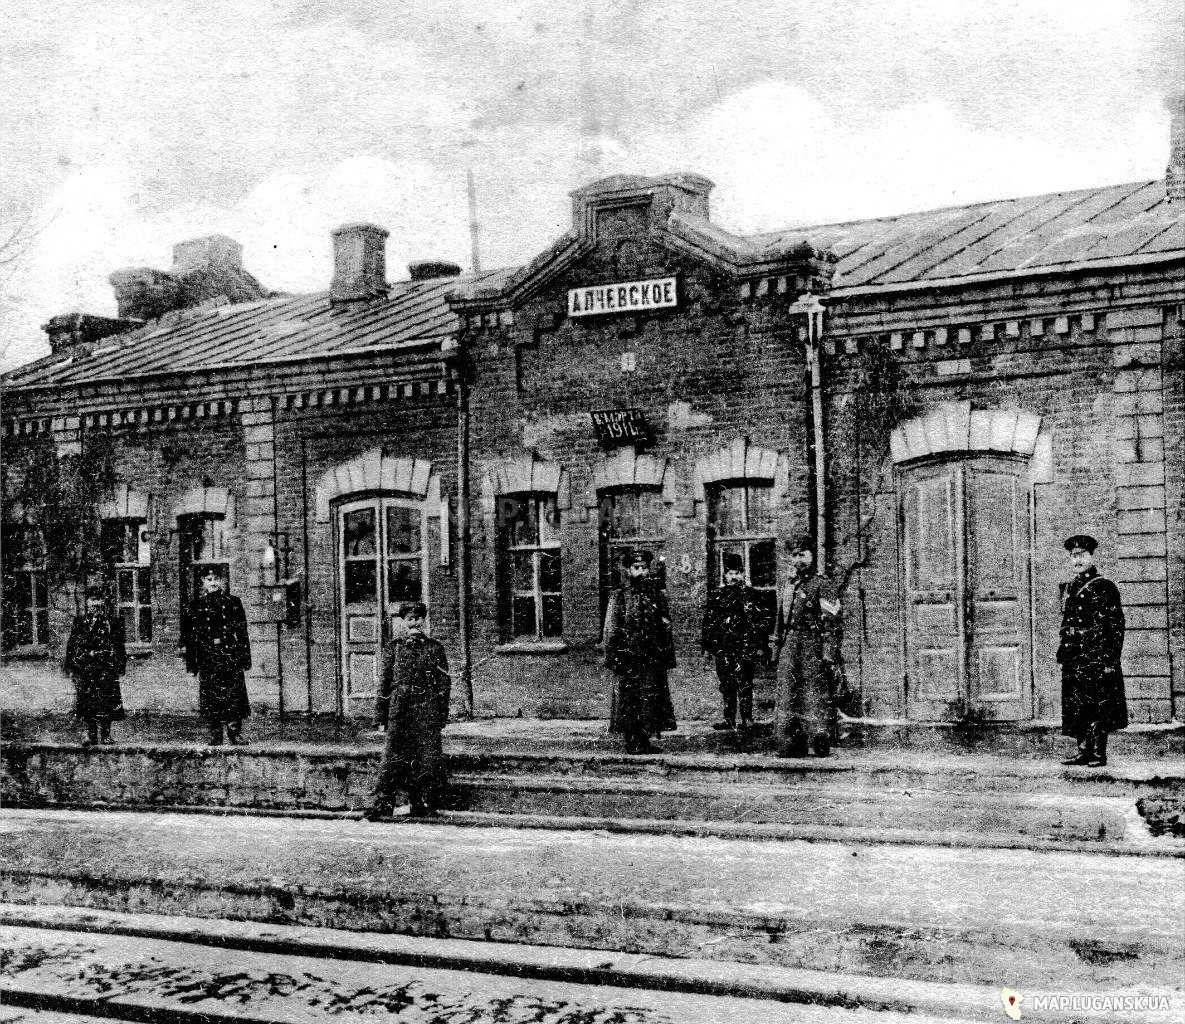 ЖД станция Алчевское, предположительно1911 год, История, Любительские, Черно-белые, Вокзалы